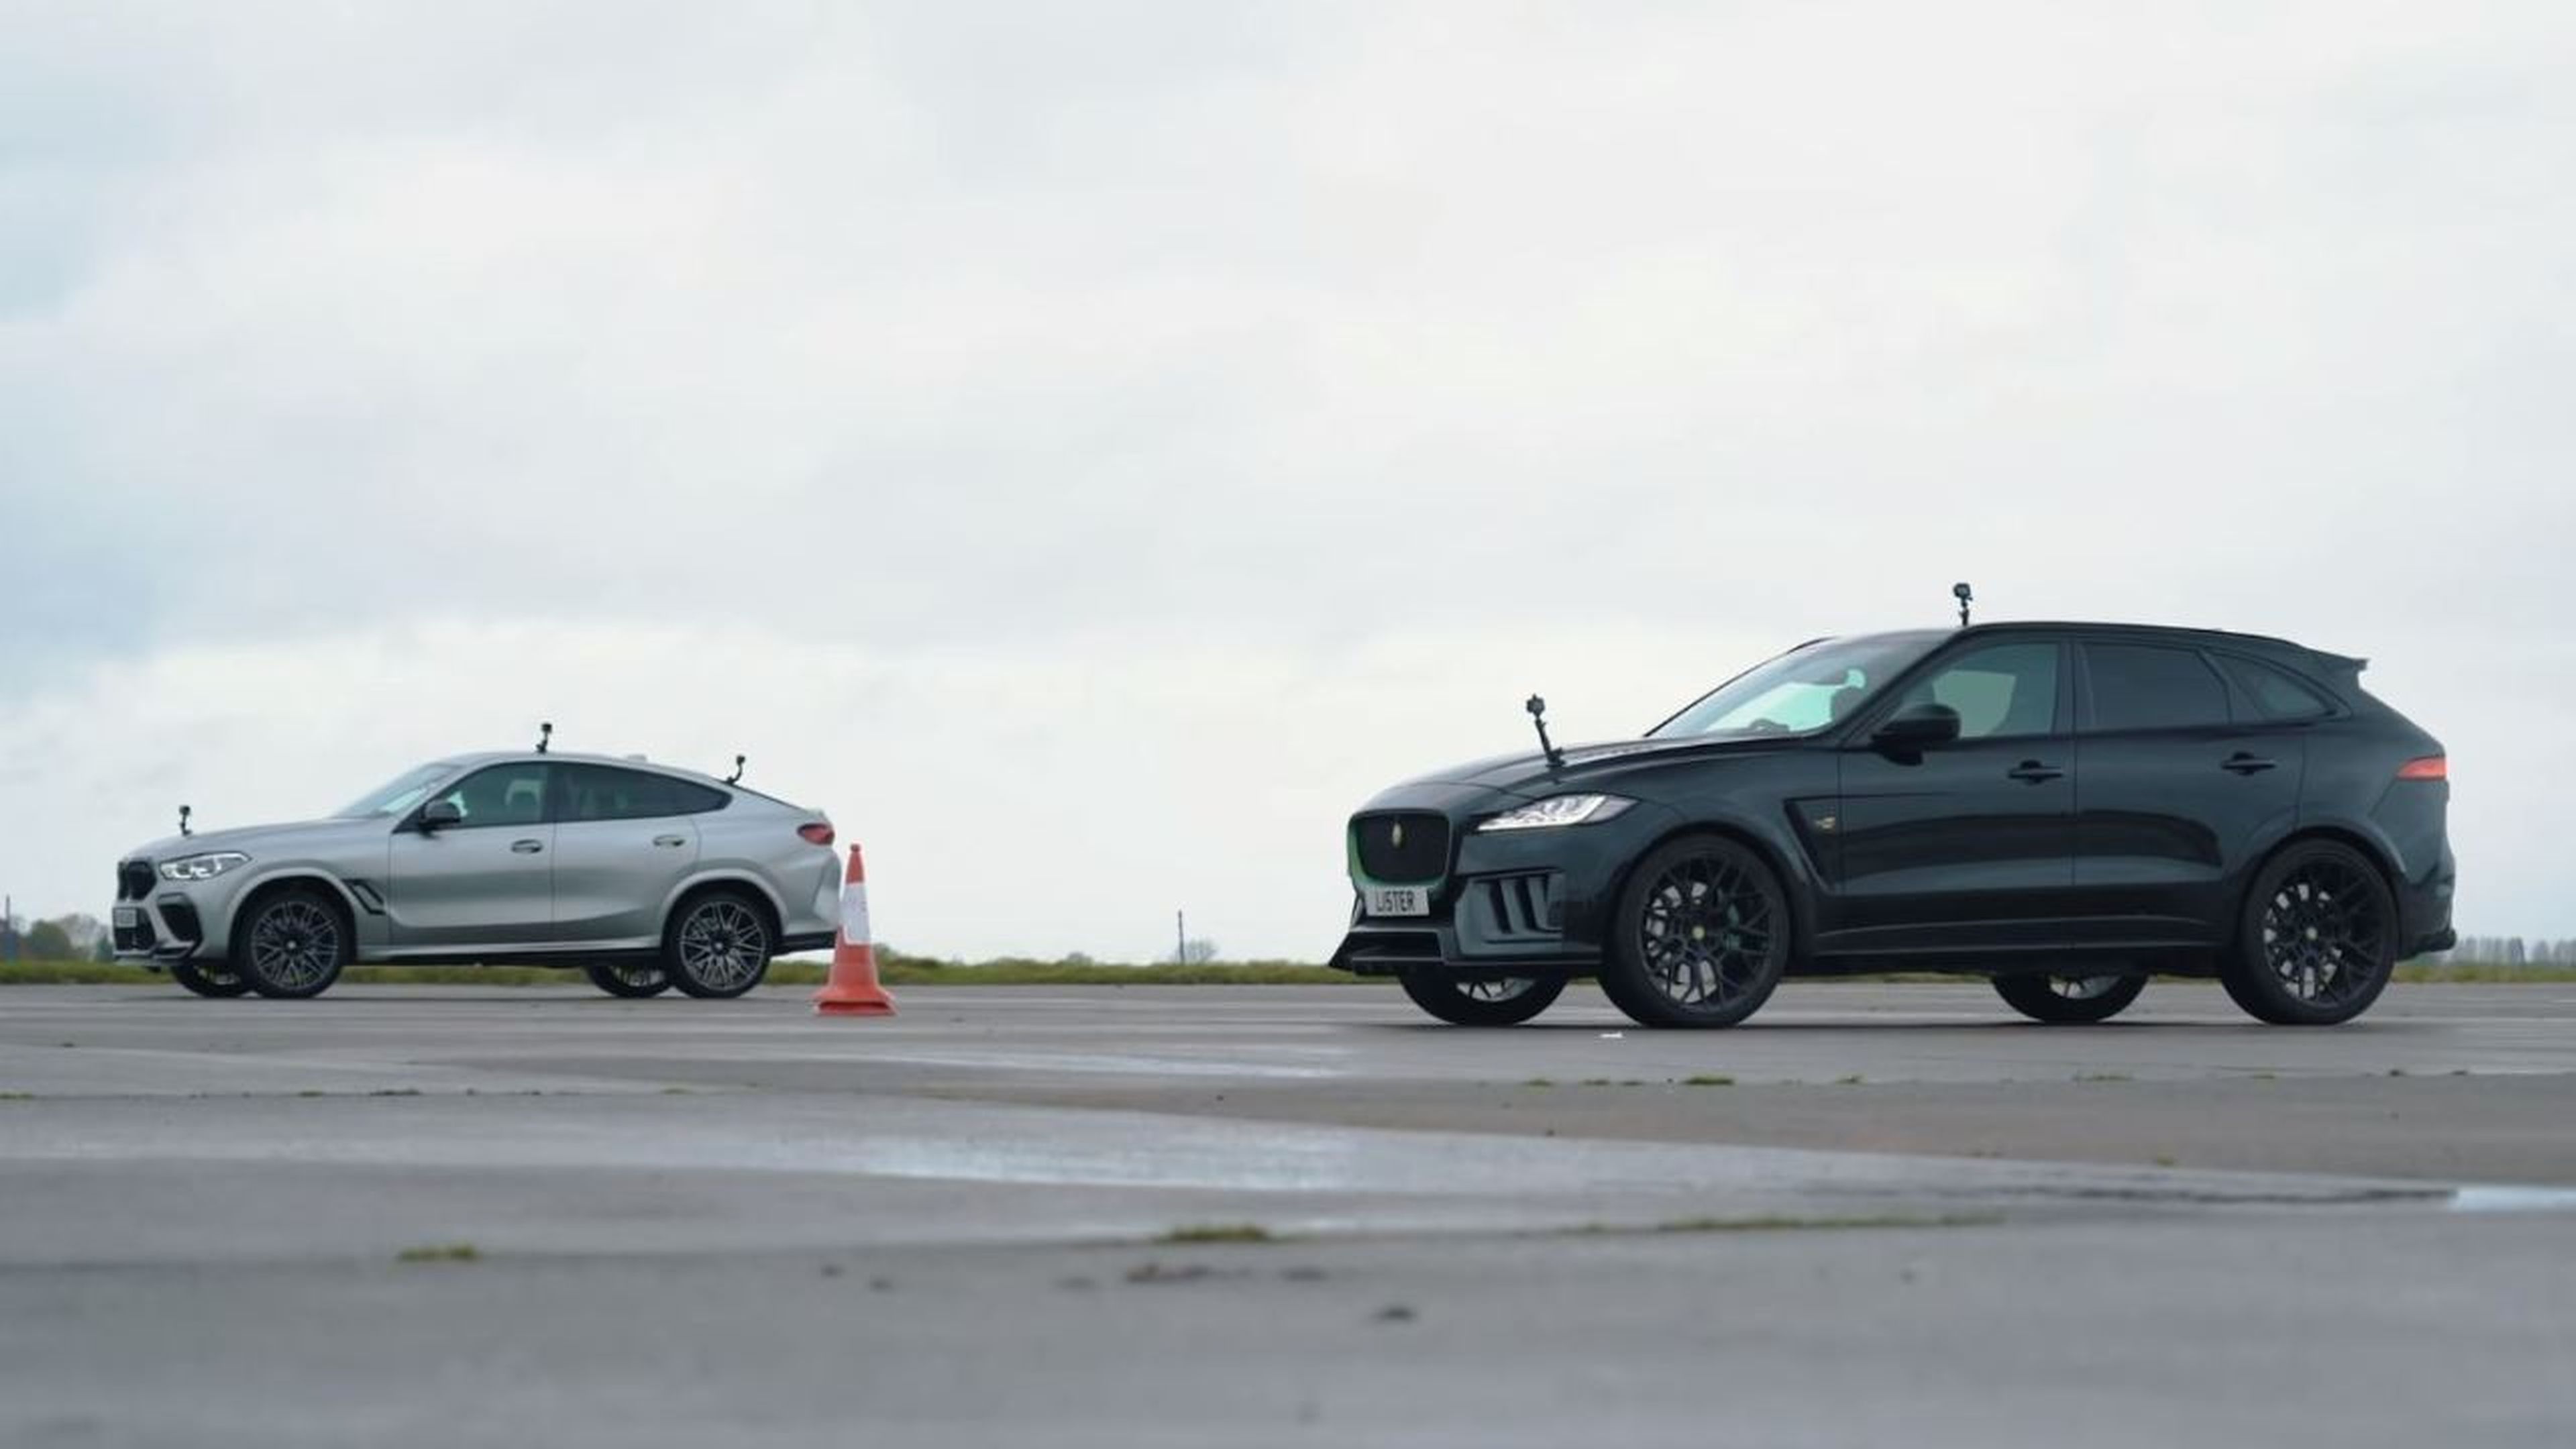 BMW X6 M Competition vs Lister Jaguar F-Pace SVR